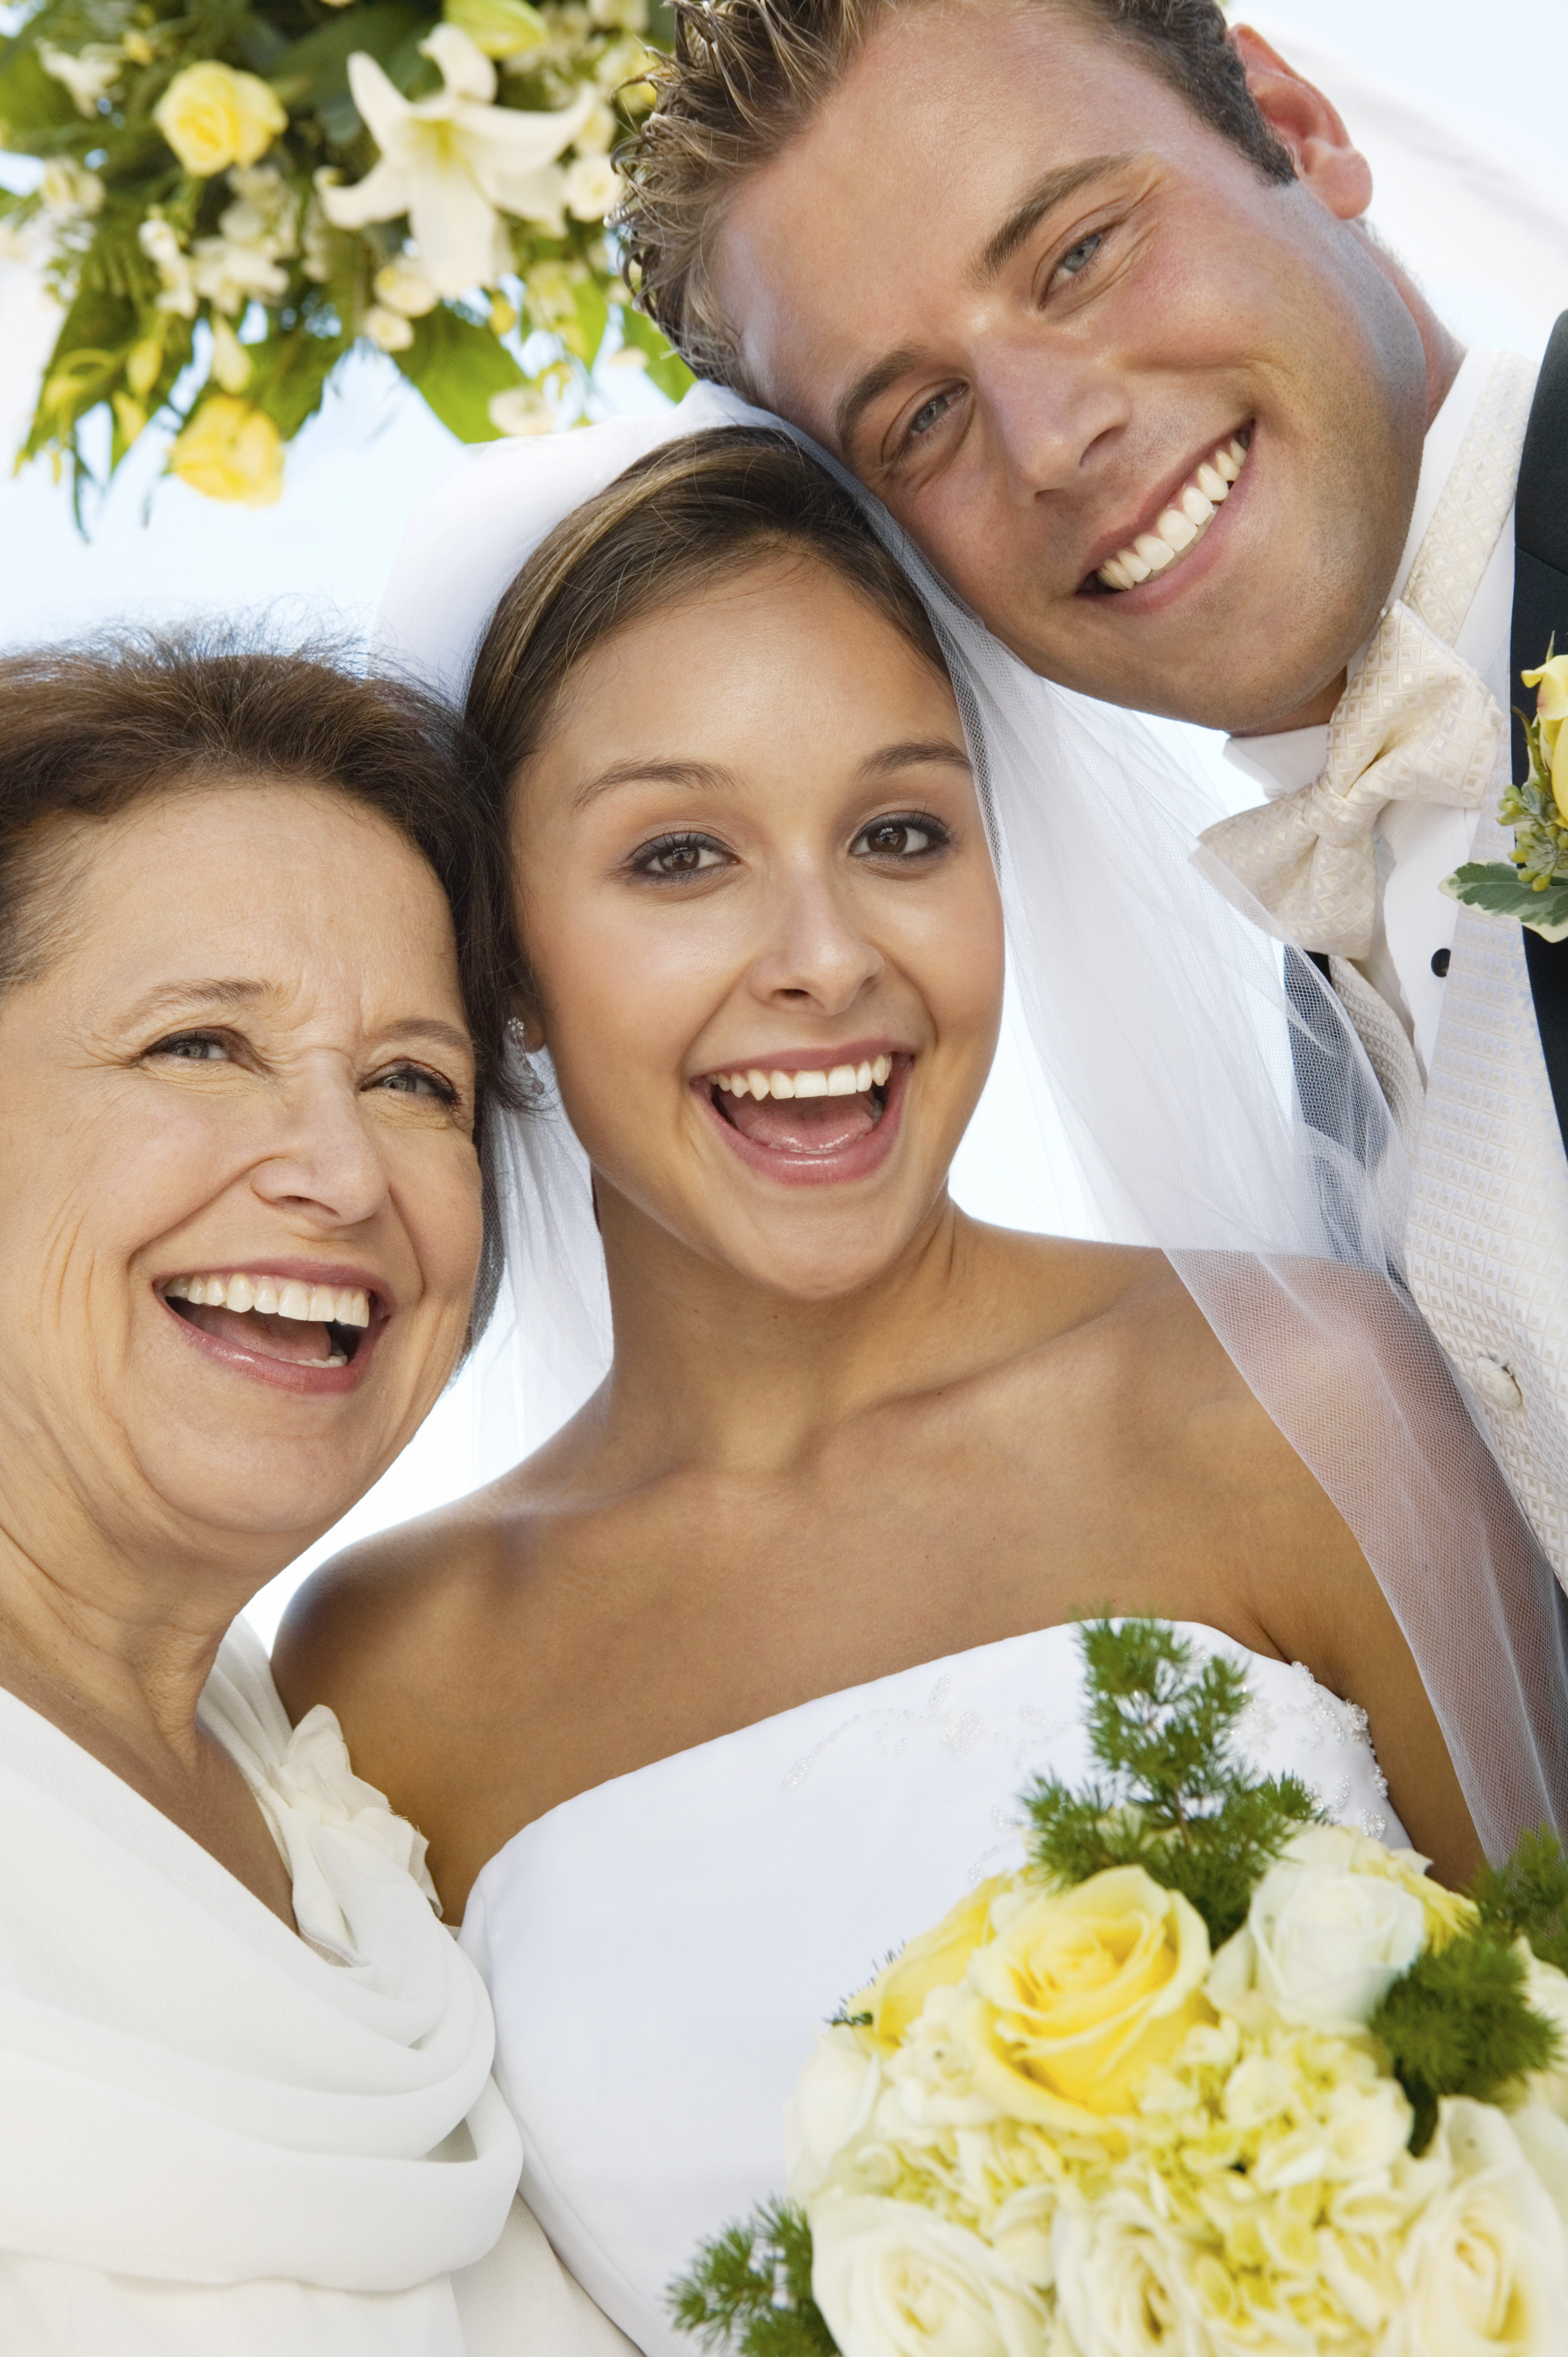 Une mariée, un marié et une mère | Source : Shutterstock